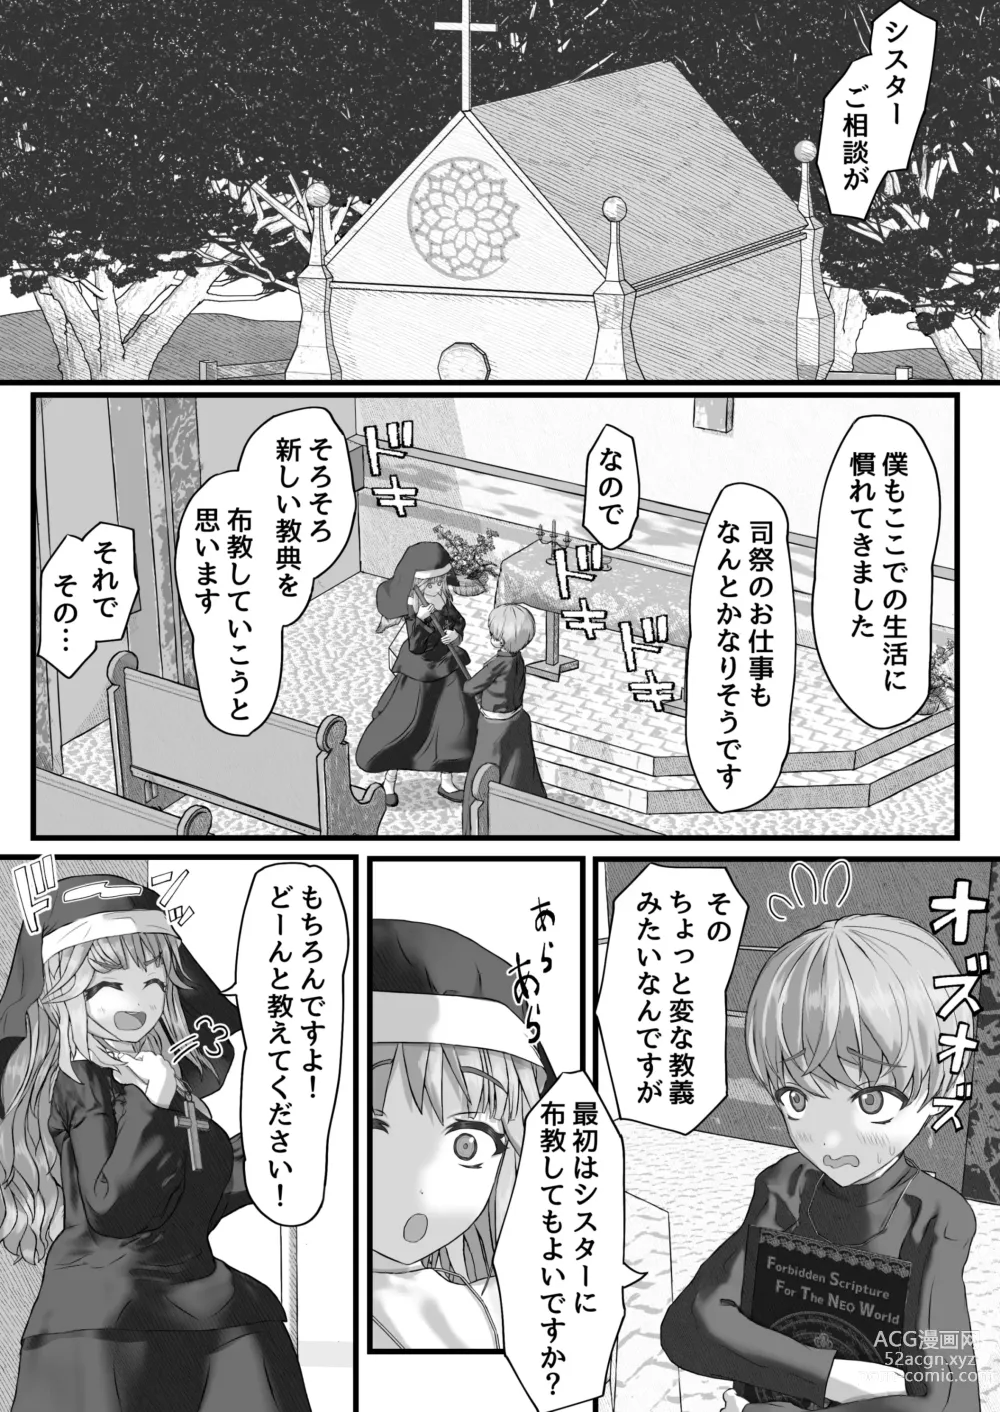 Page 12 of doujinshi Fu Honidesuga Osewa ni Natteiru Shisutā o Pantsu no ue kara ijirimasu